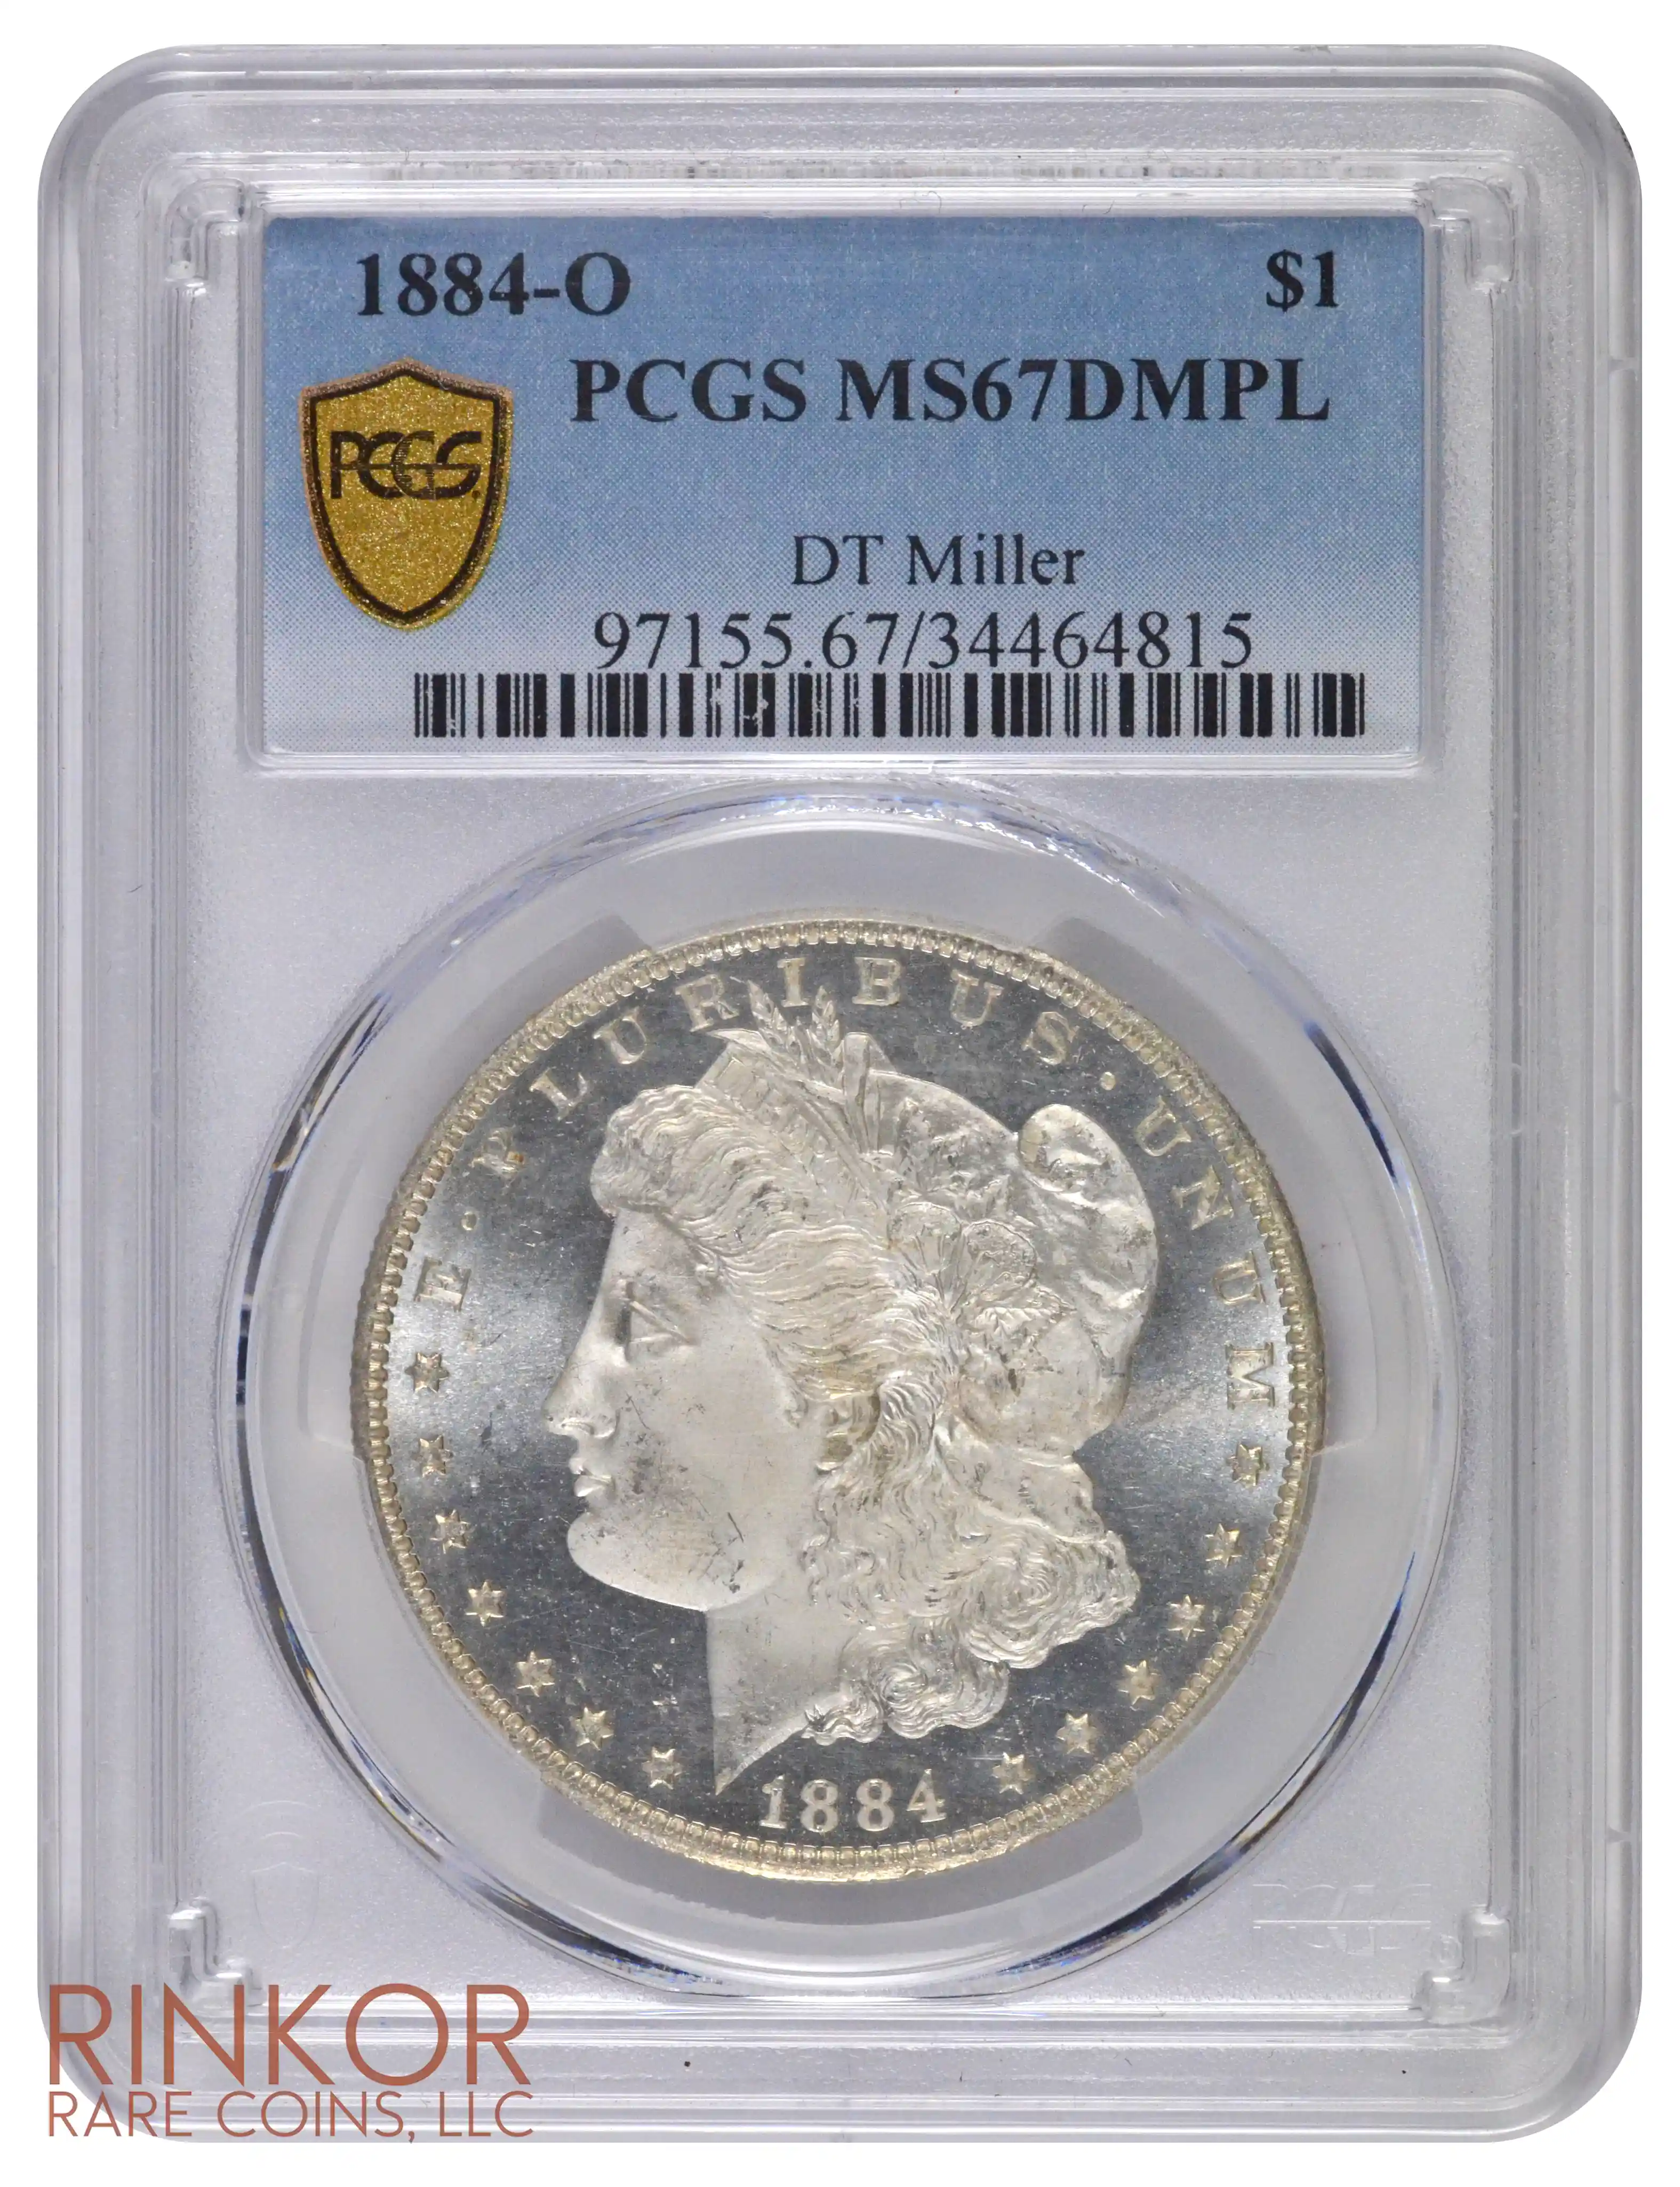 1884-O $1 PCGS